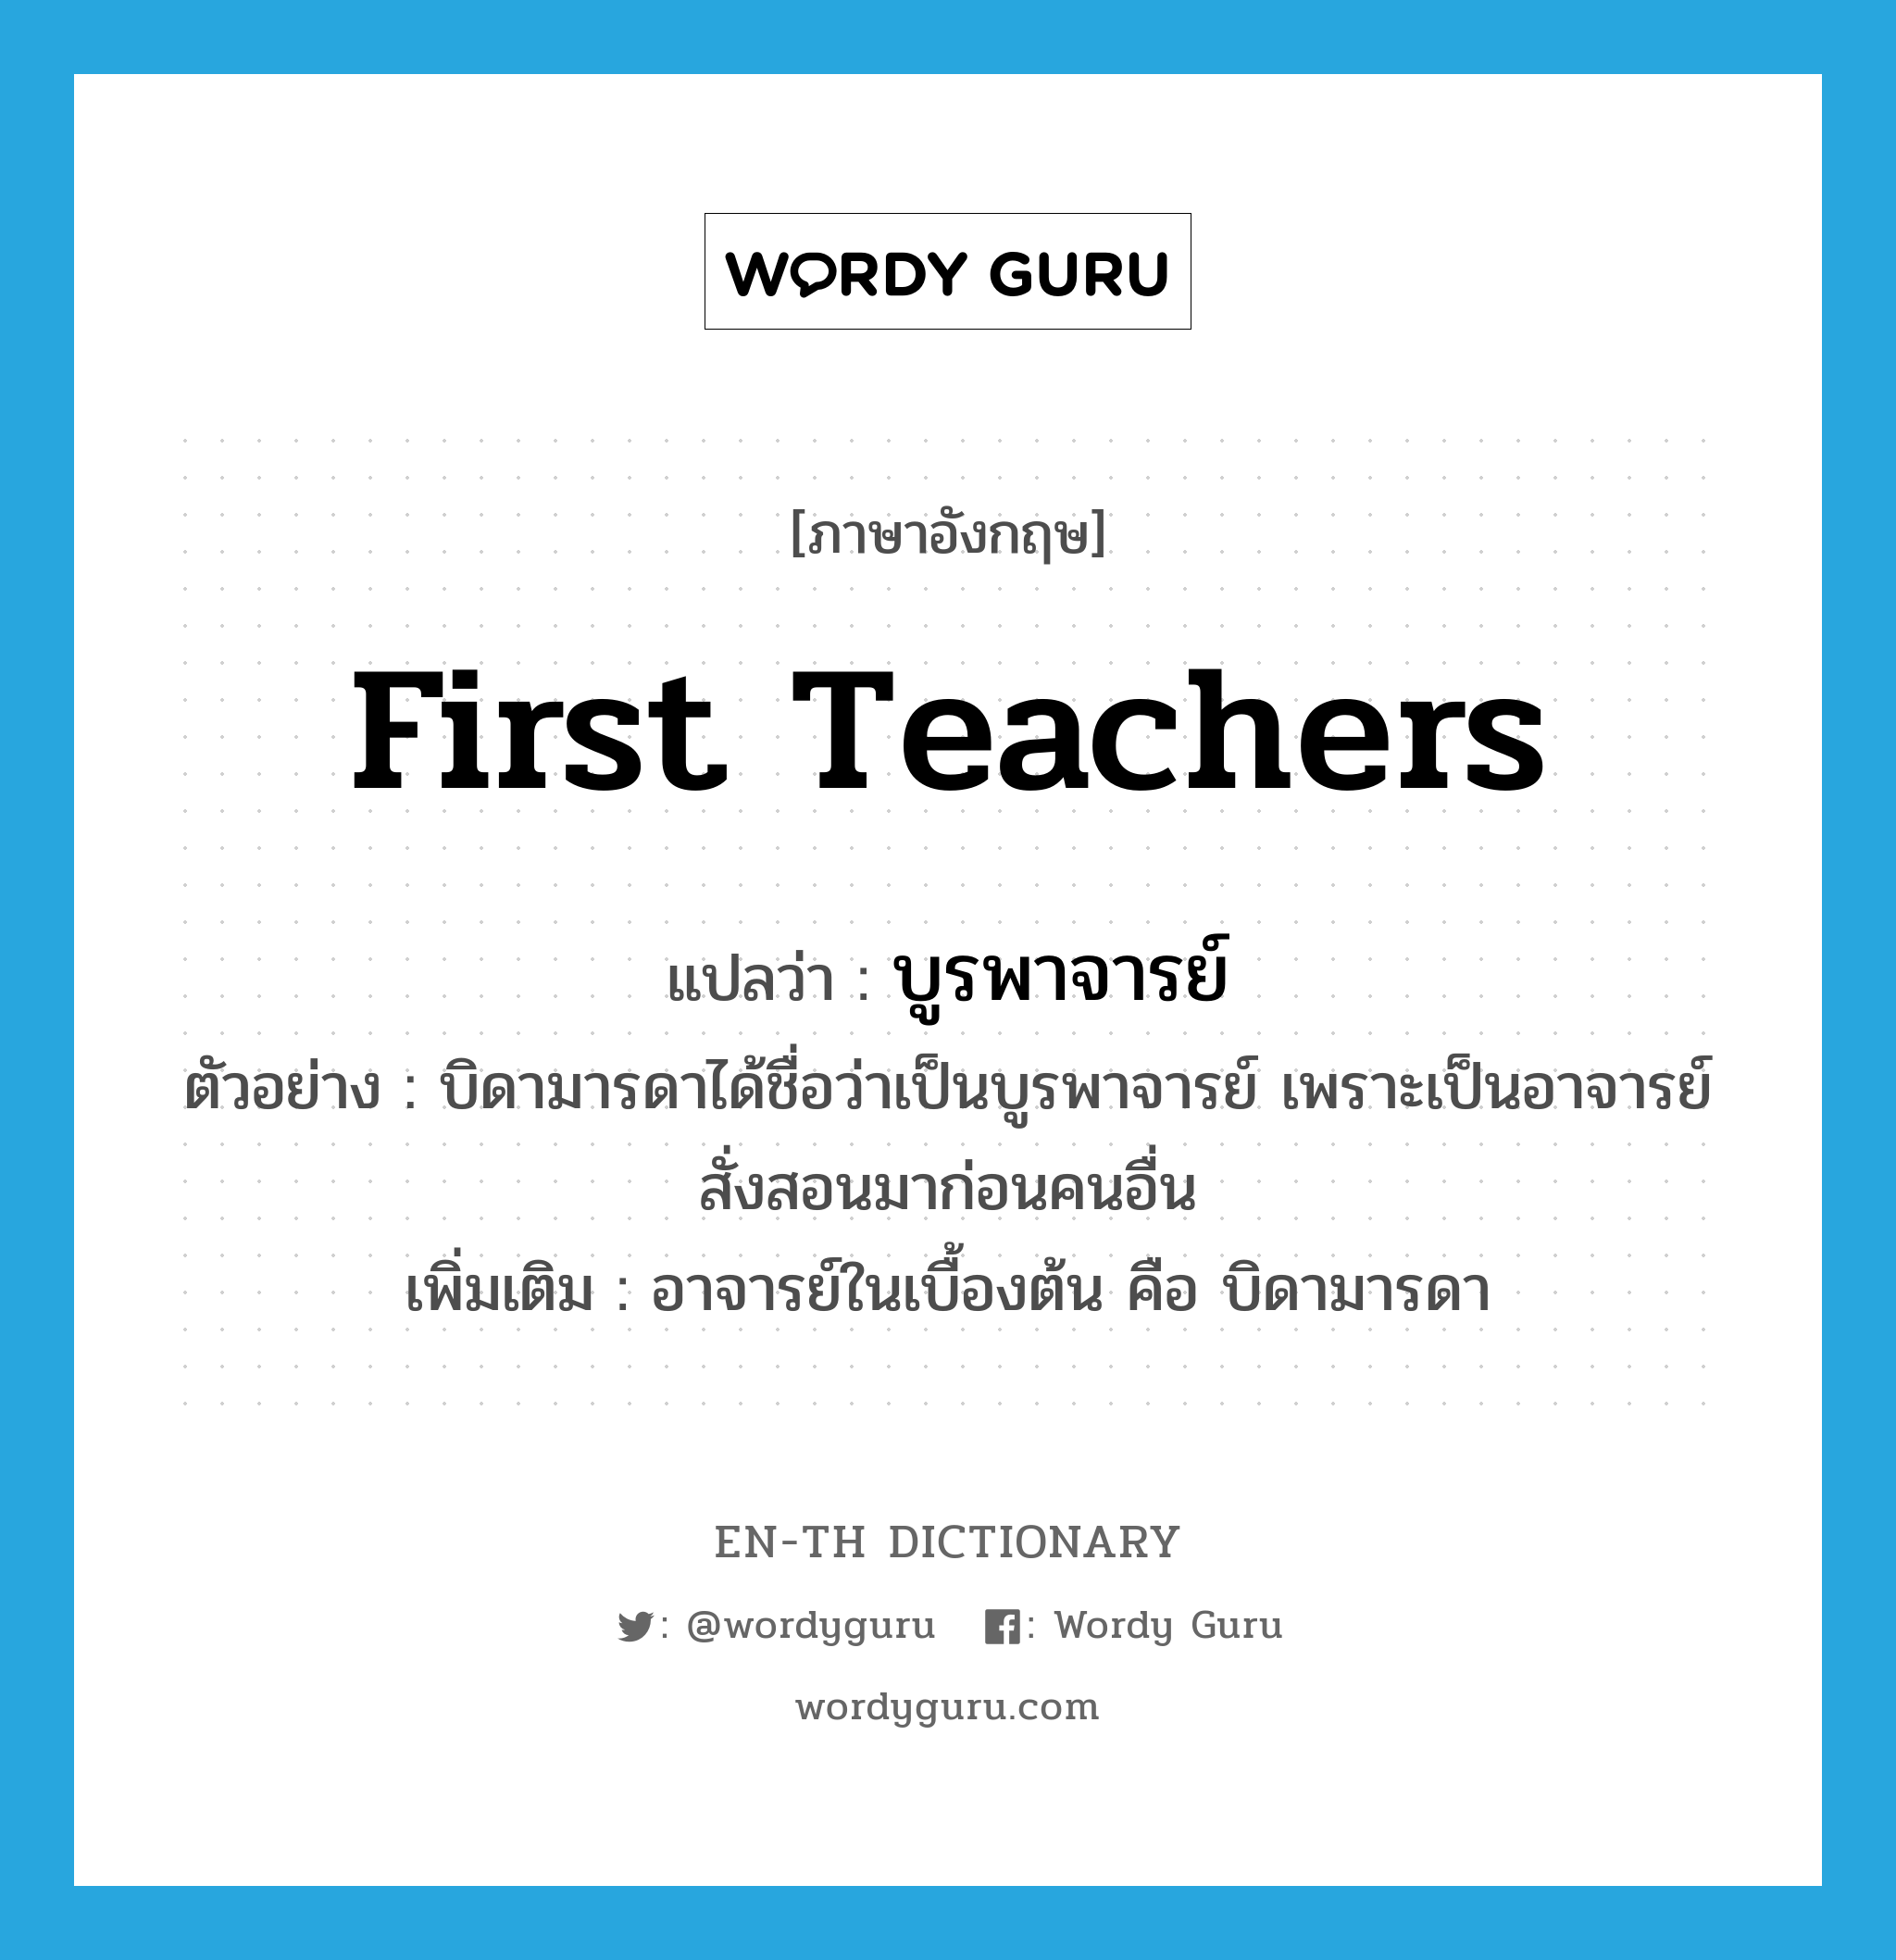 บูรพาจารย์ ภาษาอังกฤษ?, คำศัพท์ภาษาอังกฤษ บูรพาจารย์ แปลว่า first teachers ประเภท N ตัวอย่าง บิดามารดาได้ชื่อว่าเป็นบูรพาจารย์ เพราะเป็นอาจารย์สั่งสอนมาก่อนคนอื่น เพิ่มเติม อาจารย์ในเบื้องต้น คือ บิดามารดา หมวด N